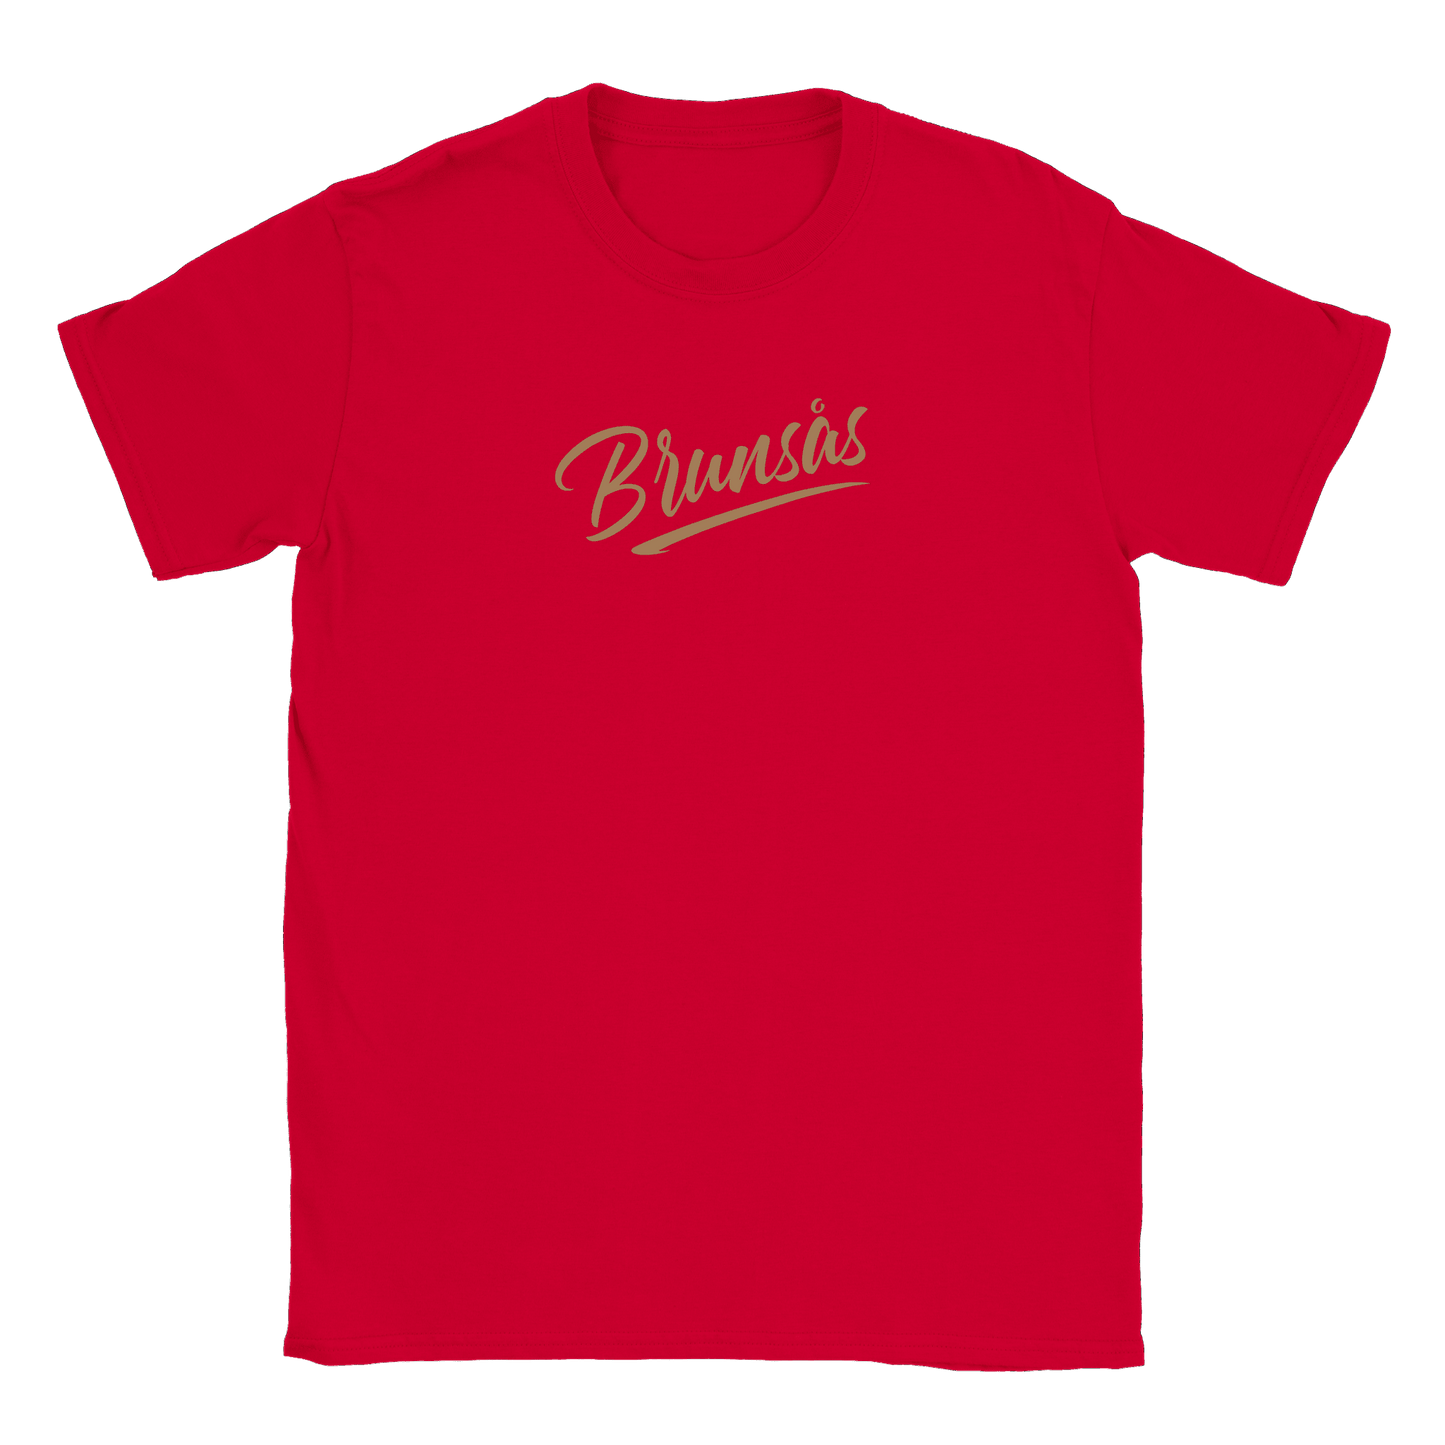 Brunsås - T-shirt Röd